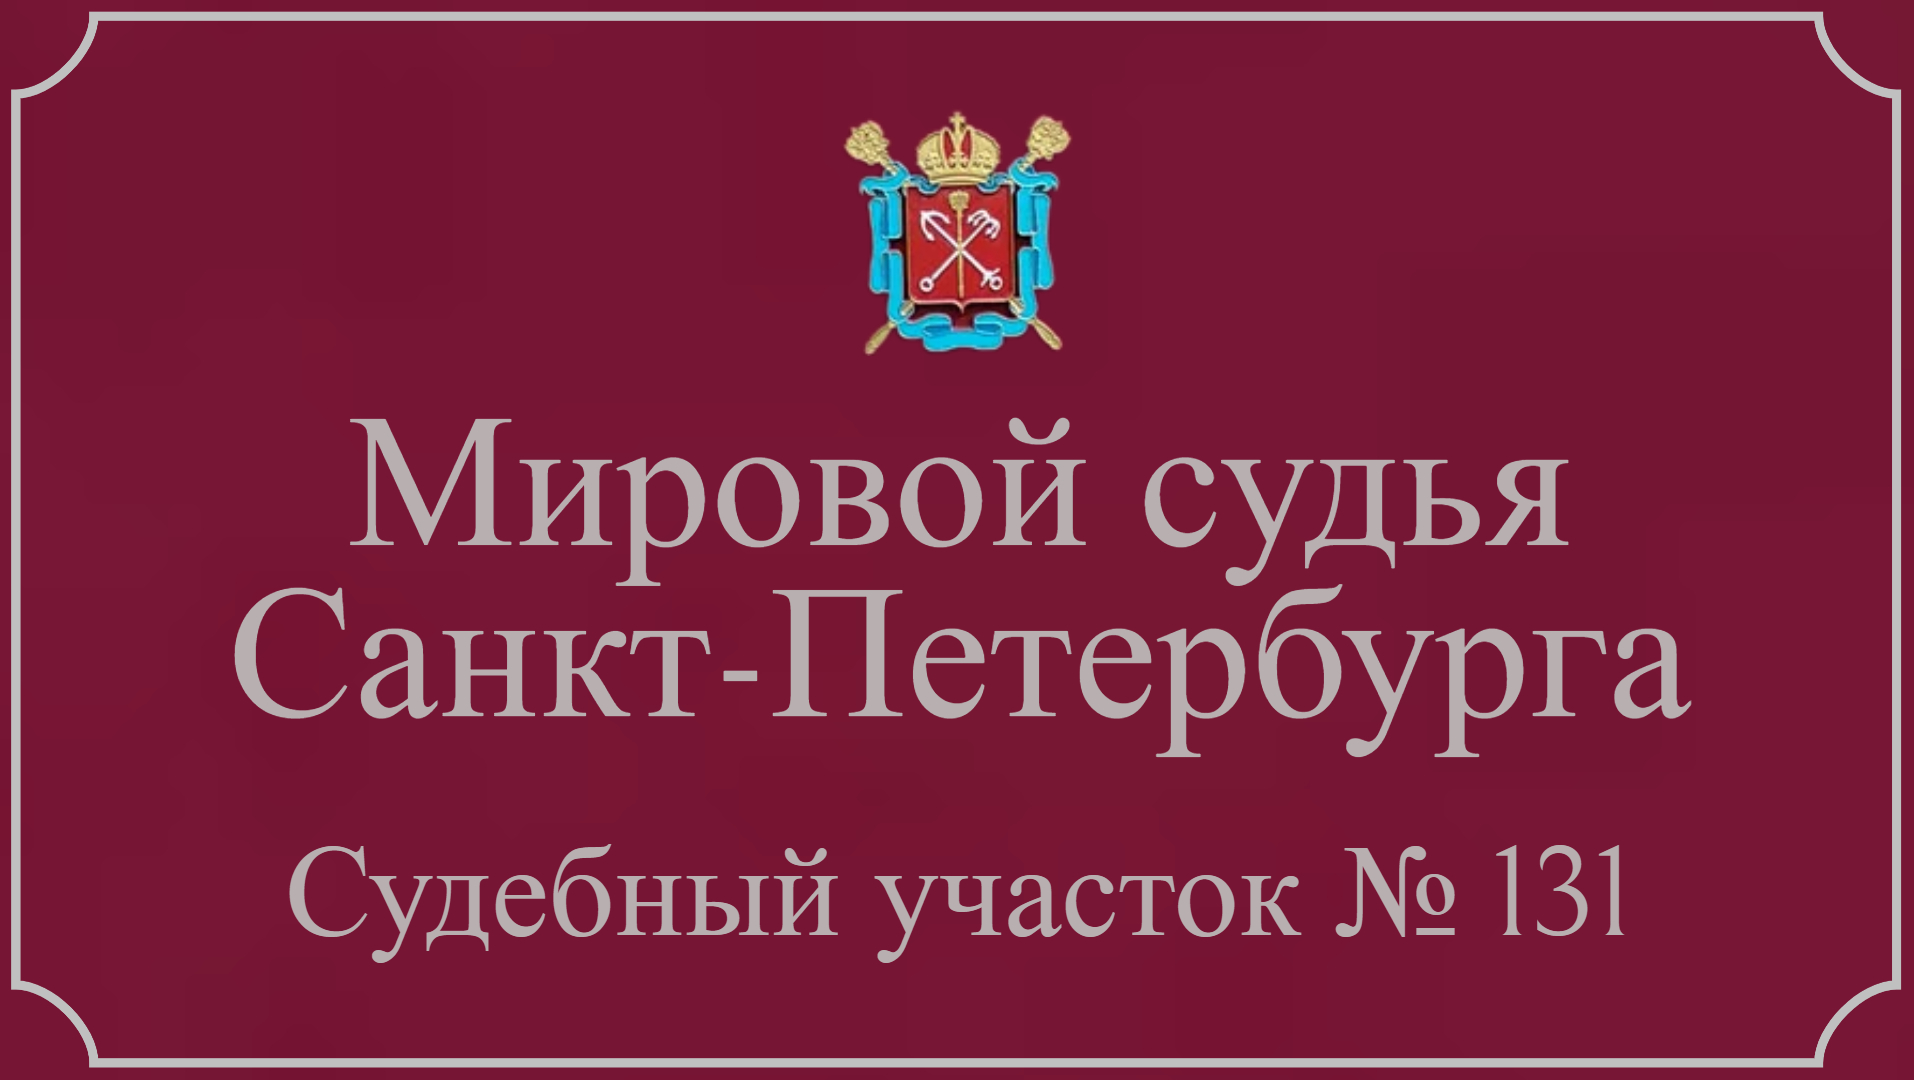 Информация по 131 судебному участку в Санкт-Петербурге.